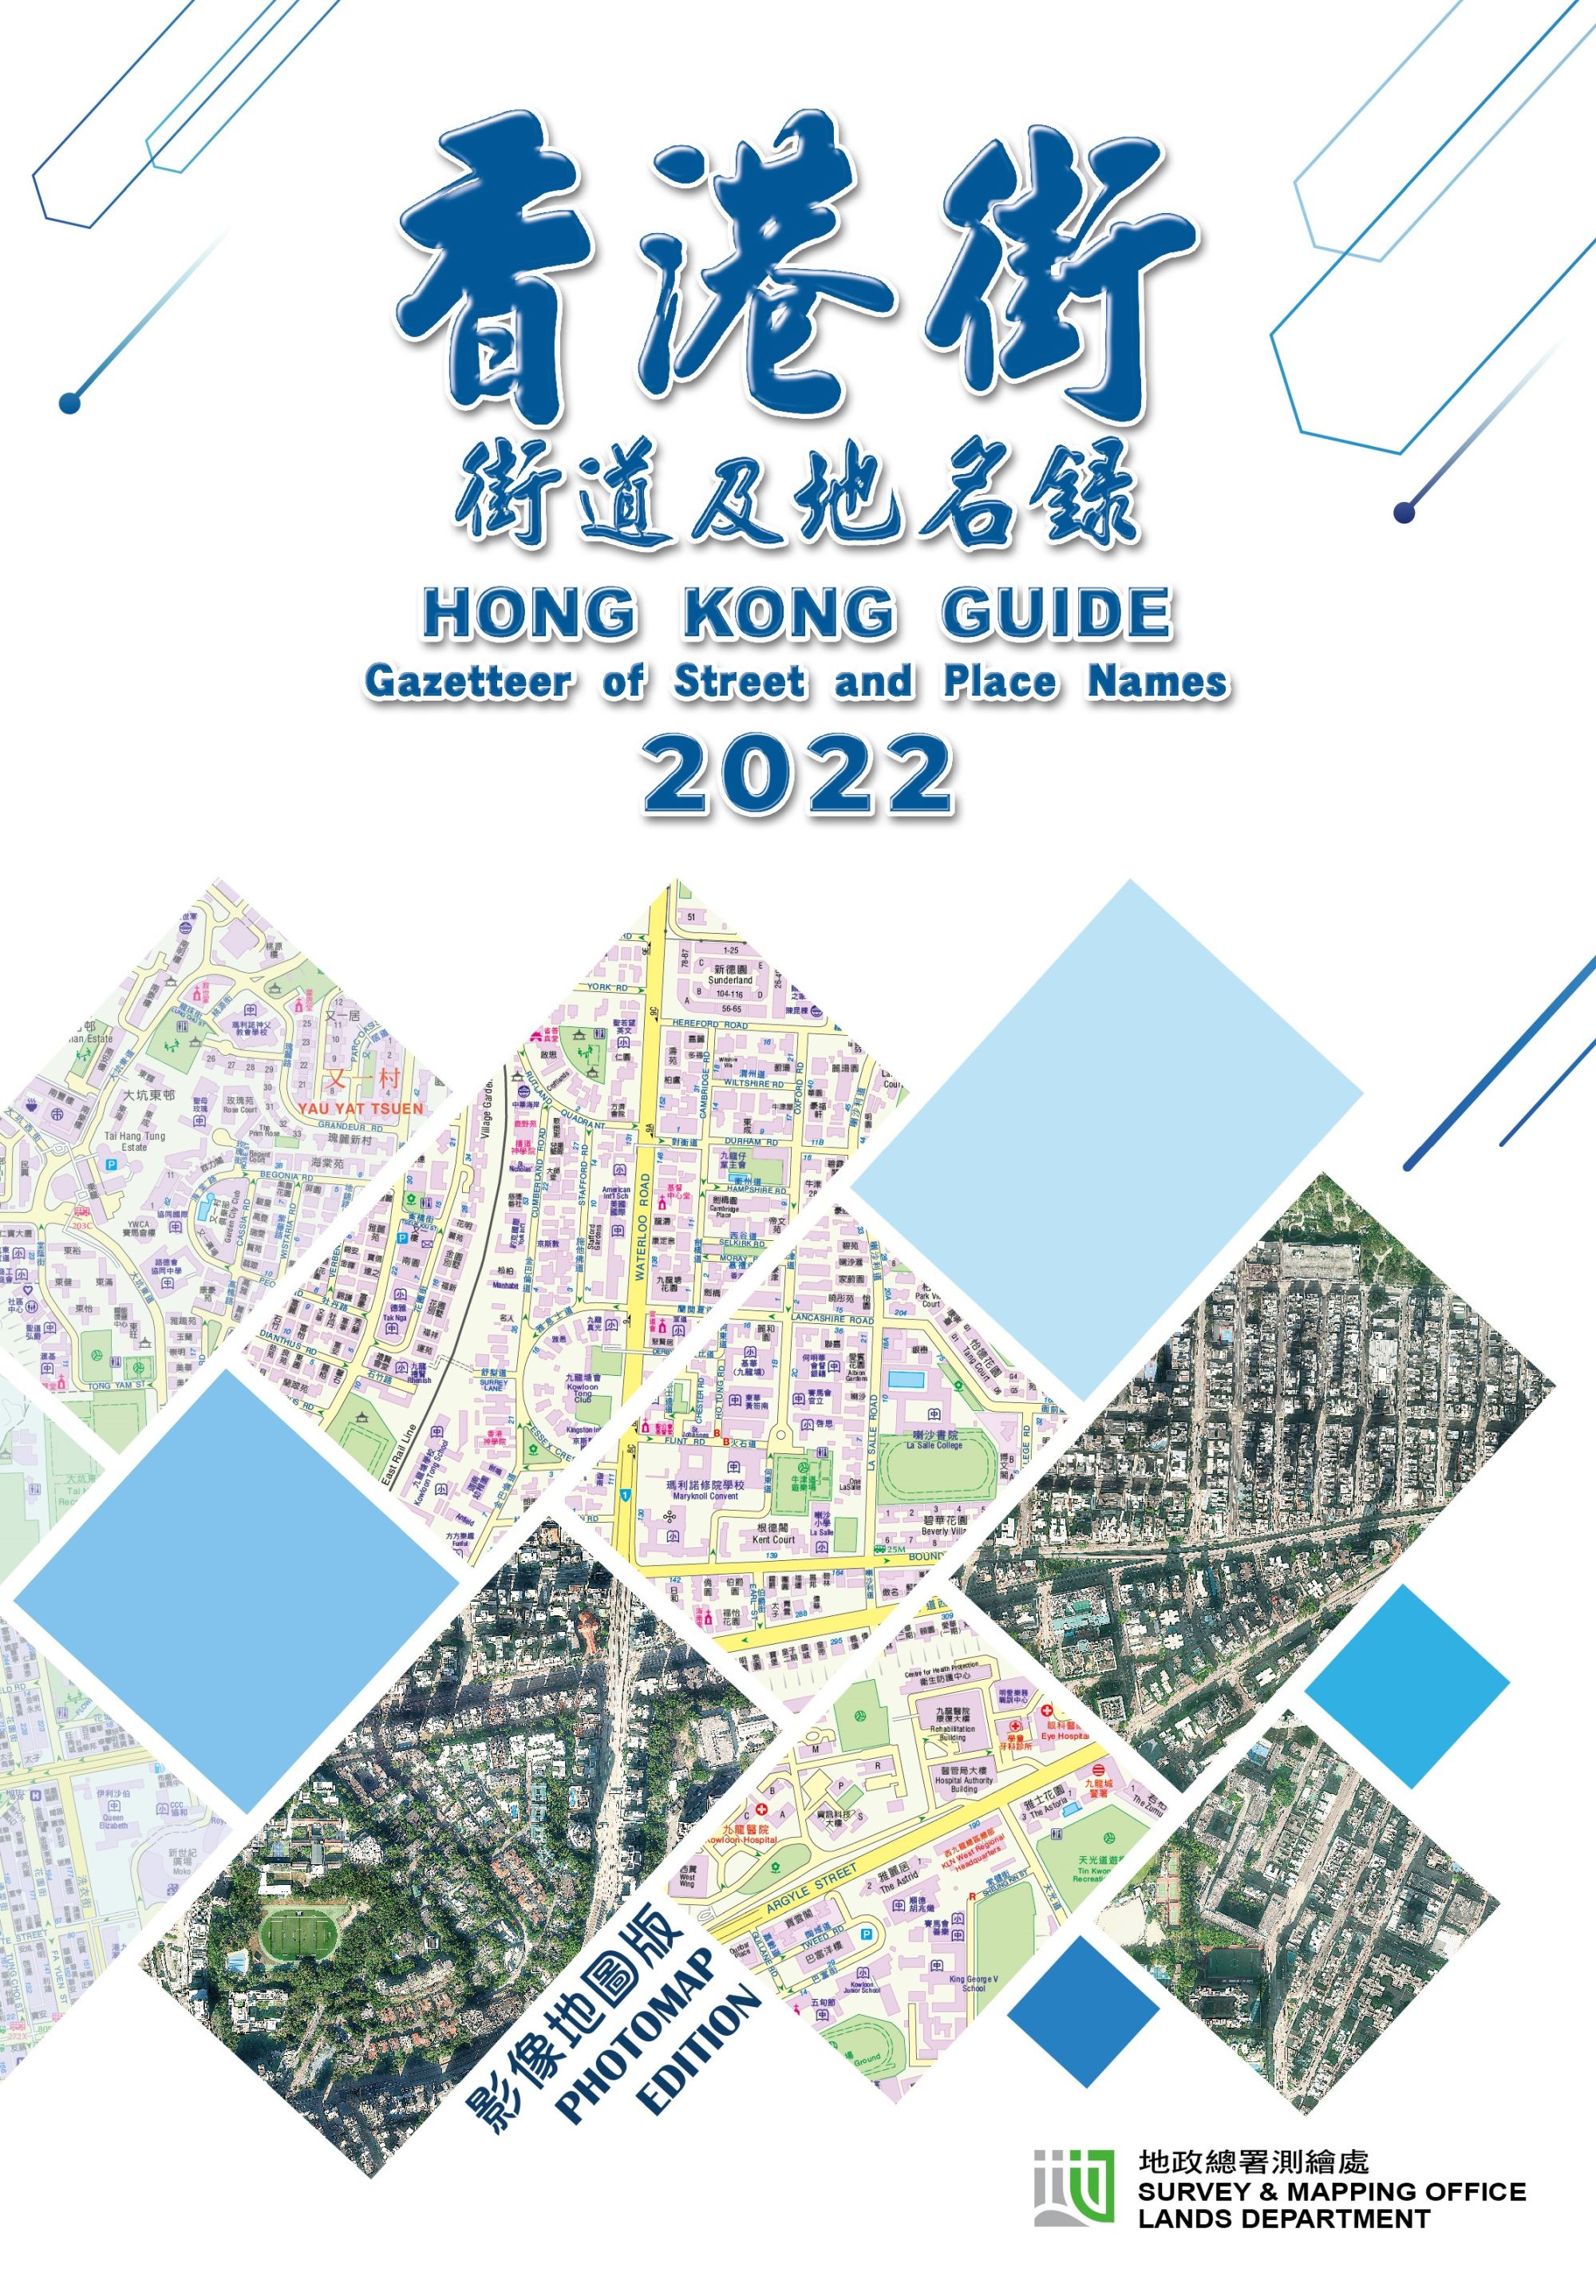 2022年影像地图版《香港街》现已公开发售。